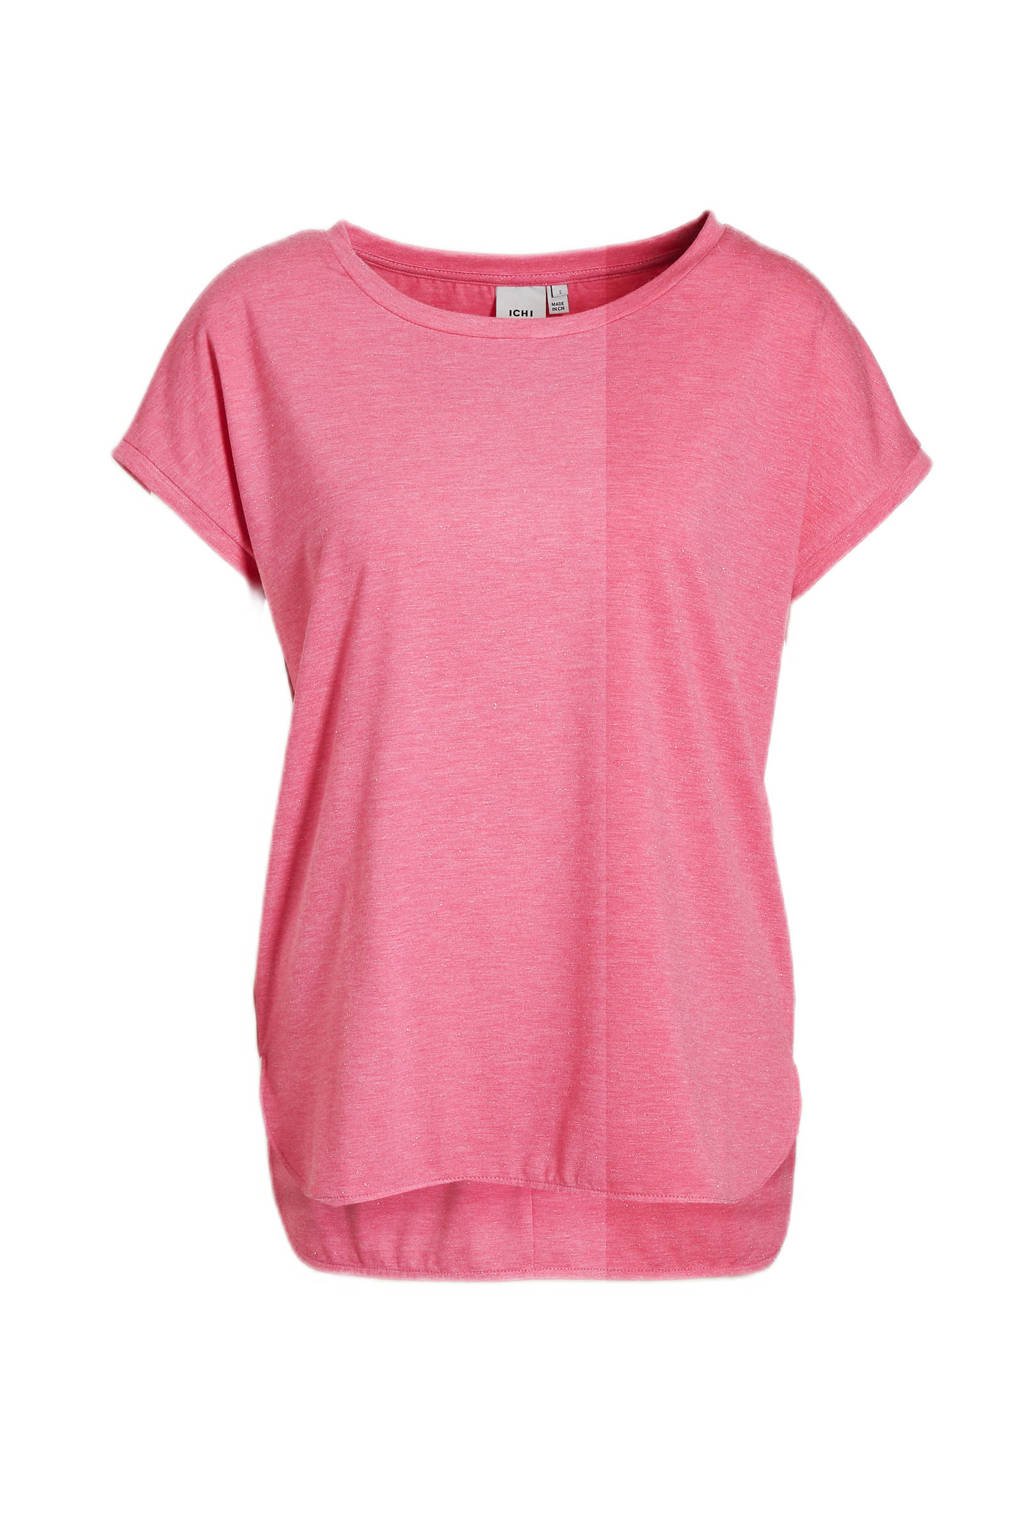 Roze dames ICHI T-shirt van katoen met korte mouwen en ronde hals